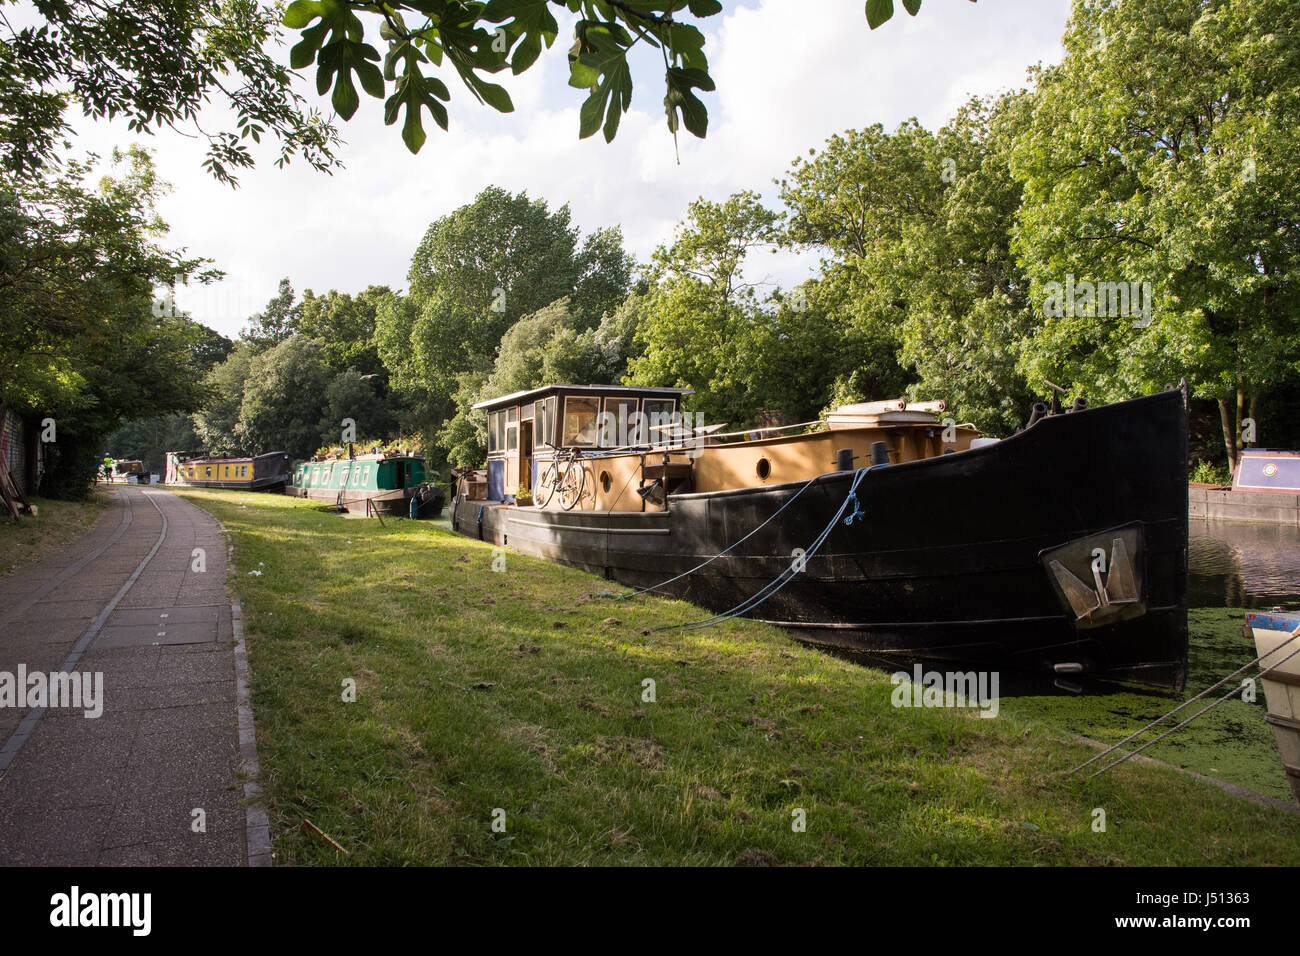 Londres, Angleterre - 10 juillet 2016 : les bateaux sont amarrés sur le Grand Union Canal à Ladbroke Grove à l'ouest de Londres. Banque D'Images